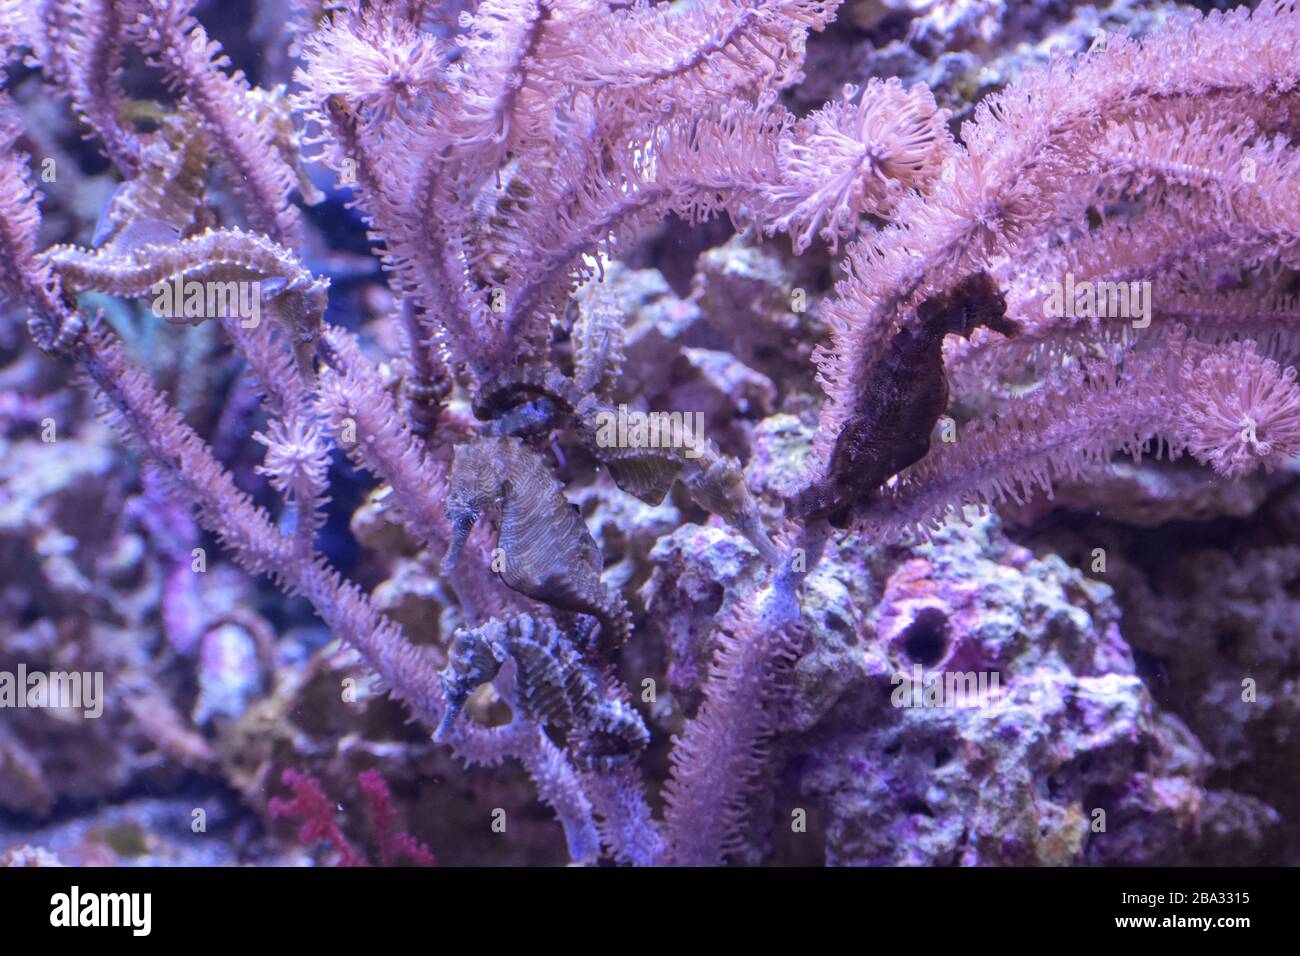 Aquarienfischtank, Purple Coral, Seahorse und Fisch Stockfoto